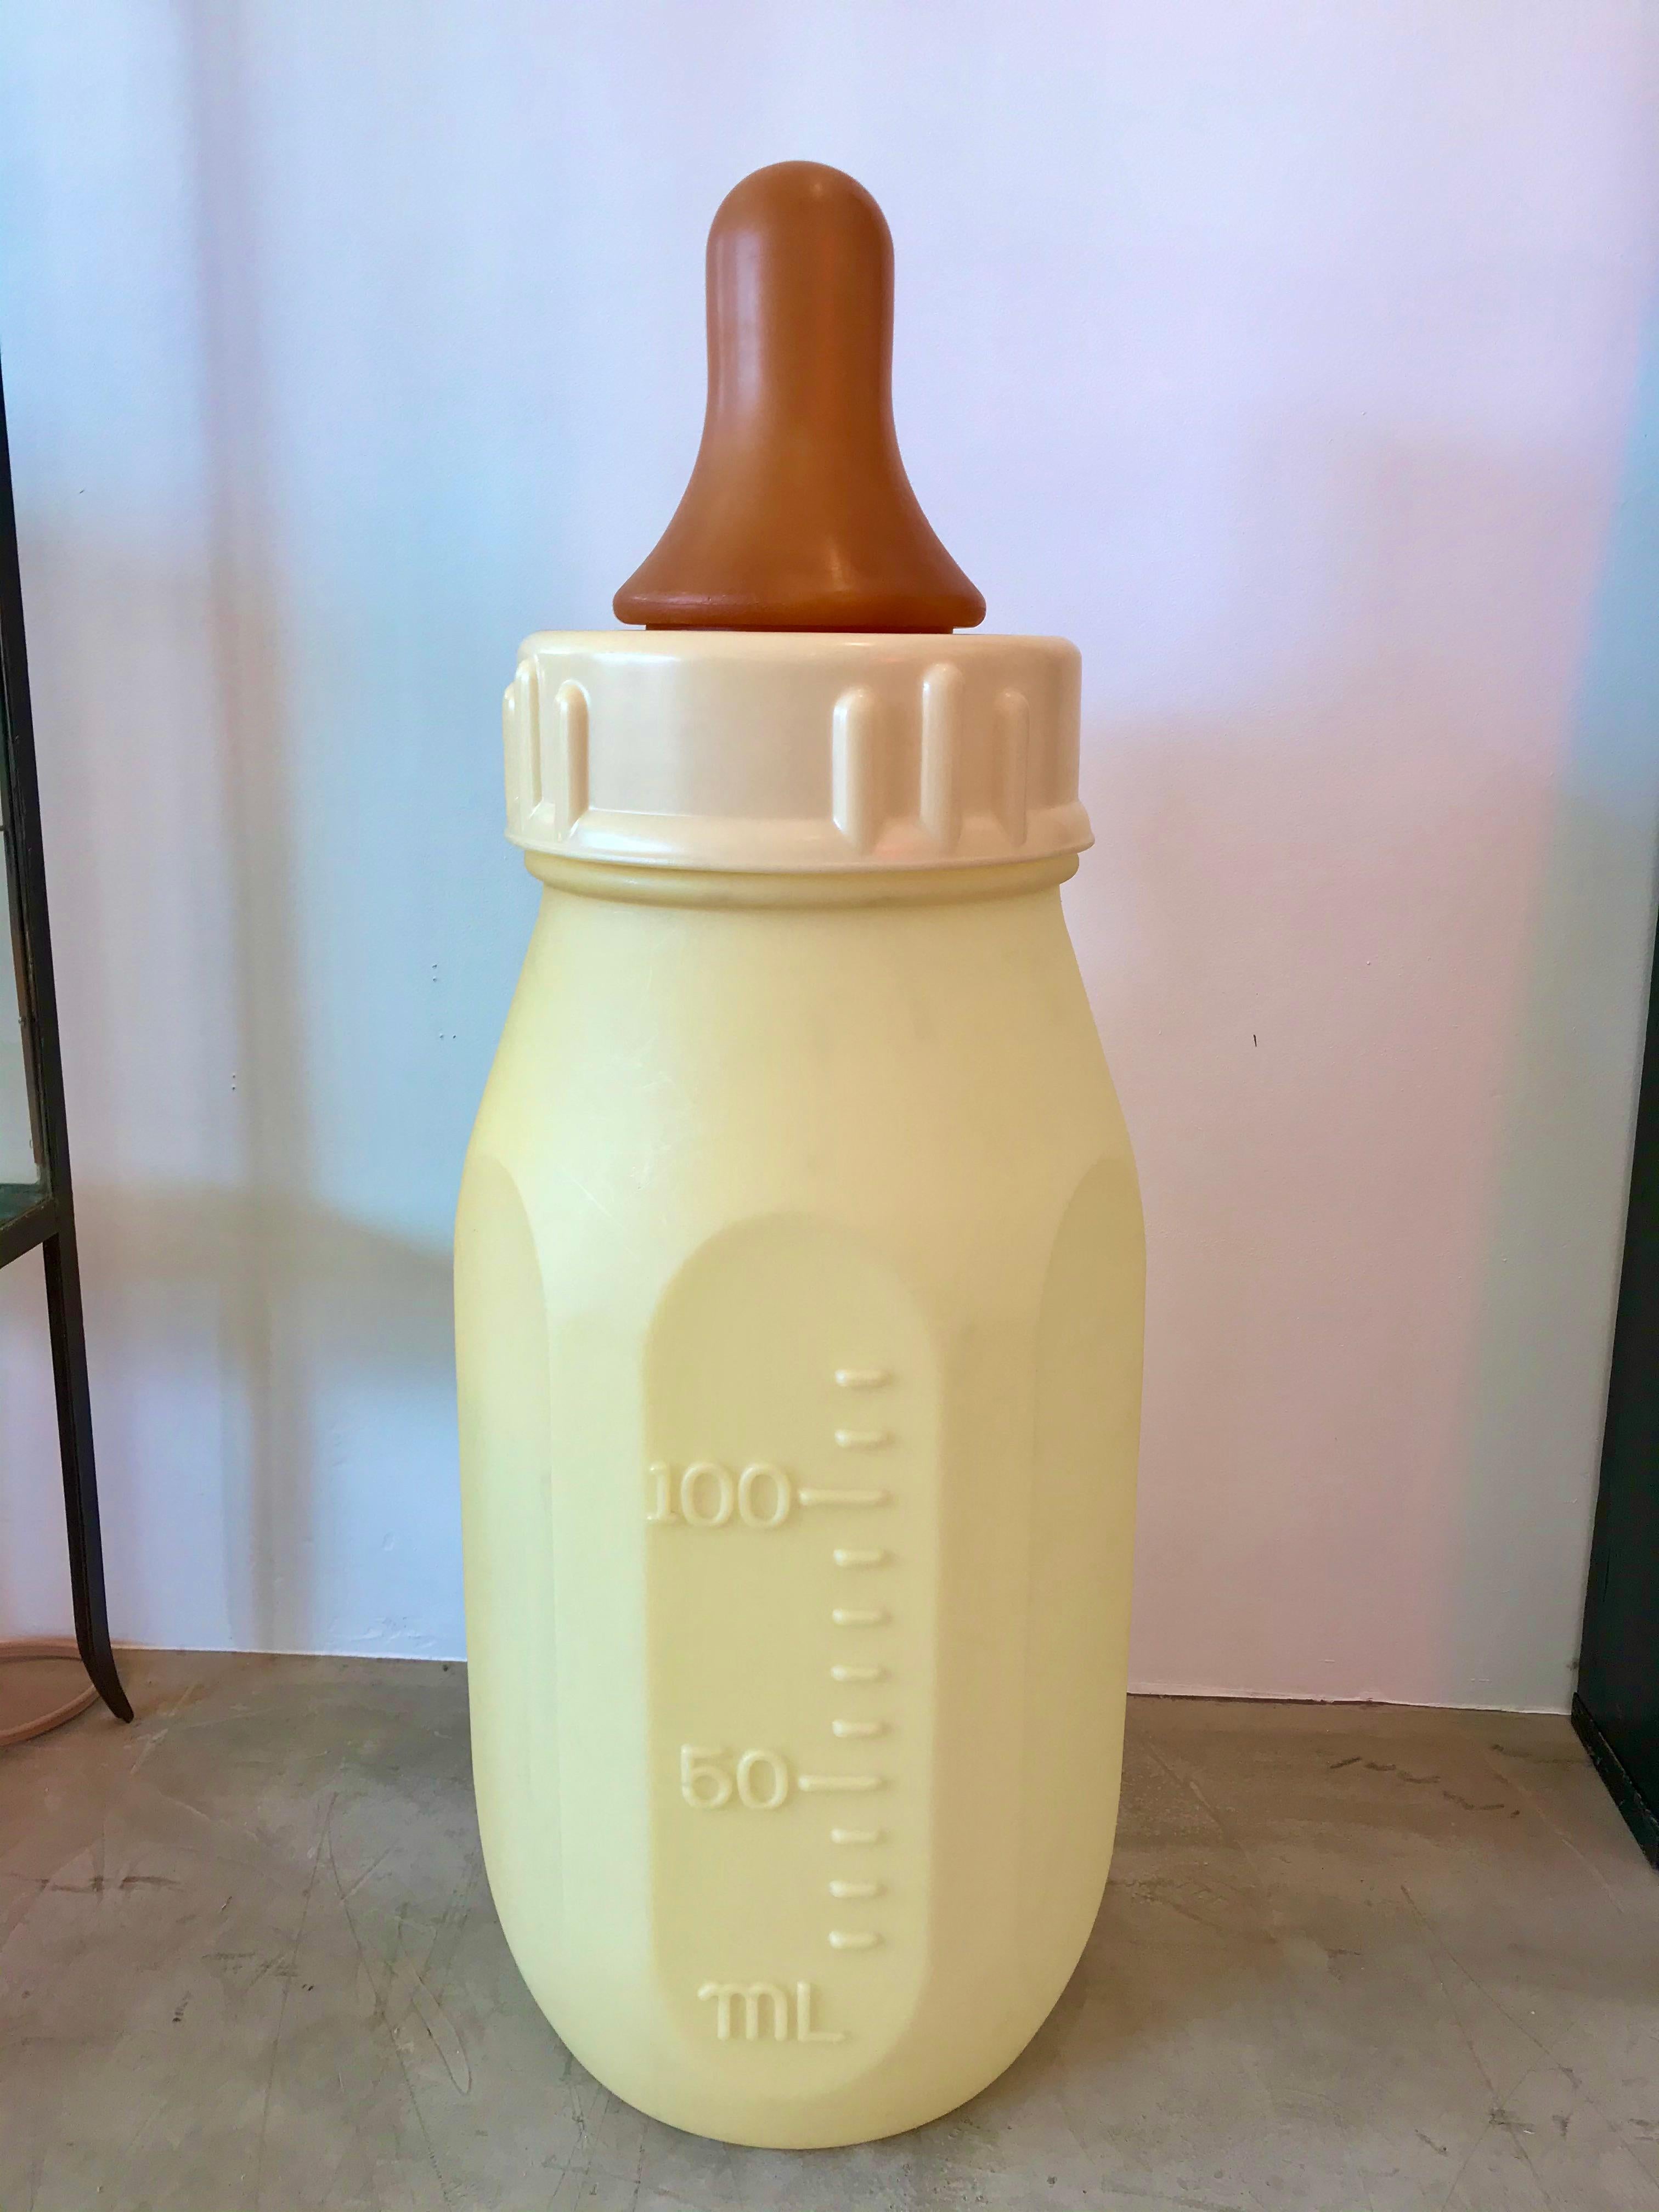 Gigantesque biberon fabriqué dans les années 1970. Biberon en plastique dur avec bouchon amovible et tétine en caoutchouc. Bouteille jaune pâle avec des onces d'un côté et des millilitres de l'autre. Avec ses trois pieds et demi de haut et ses 15